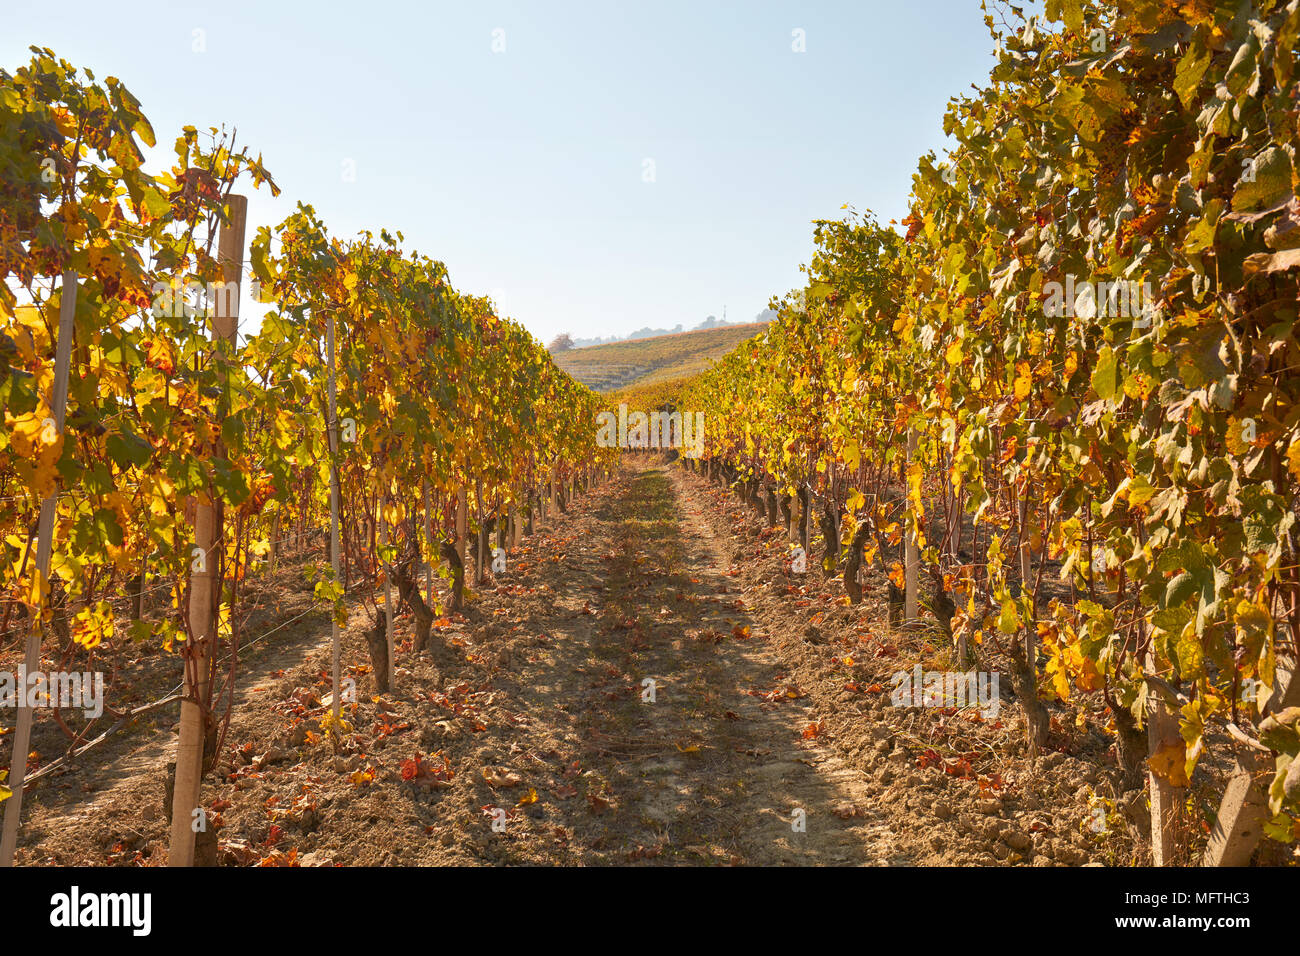 Chemin dans le vignoble en automne avec des feuilles jaunes dans une journée ensoleillée, point de fuite Banque D'Images